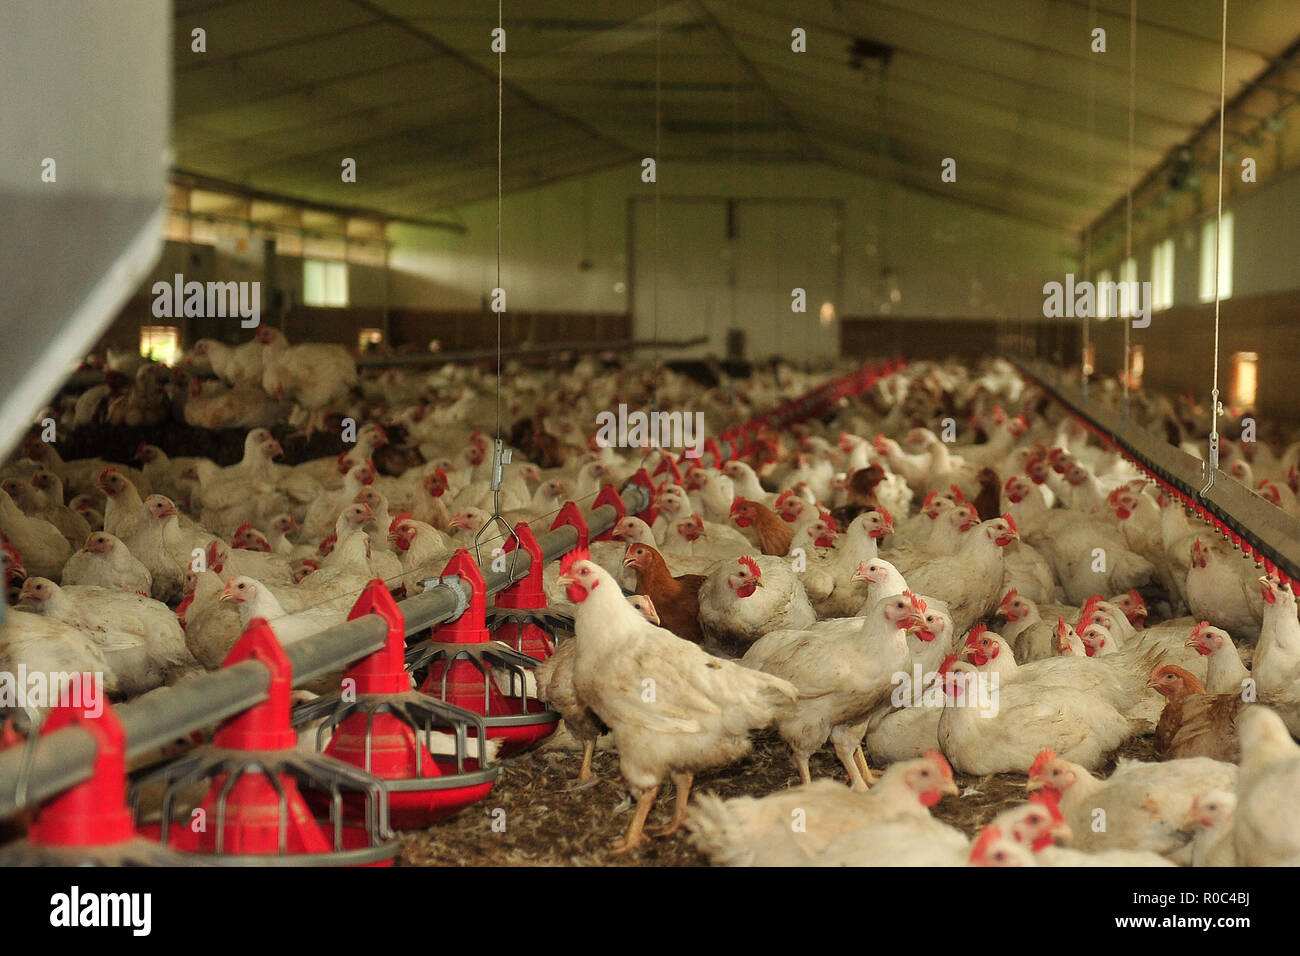 La cría de pollos intensivo Foto de stock